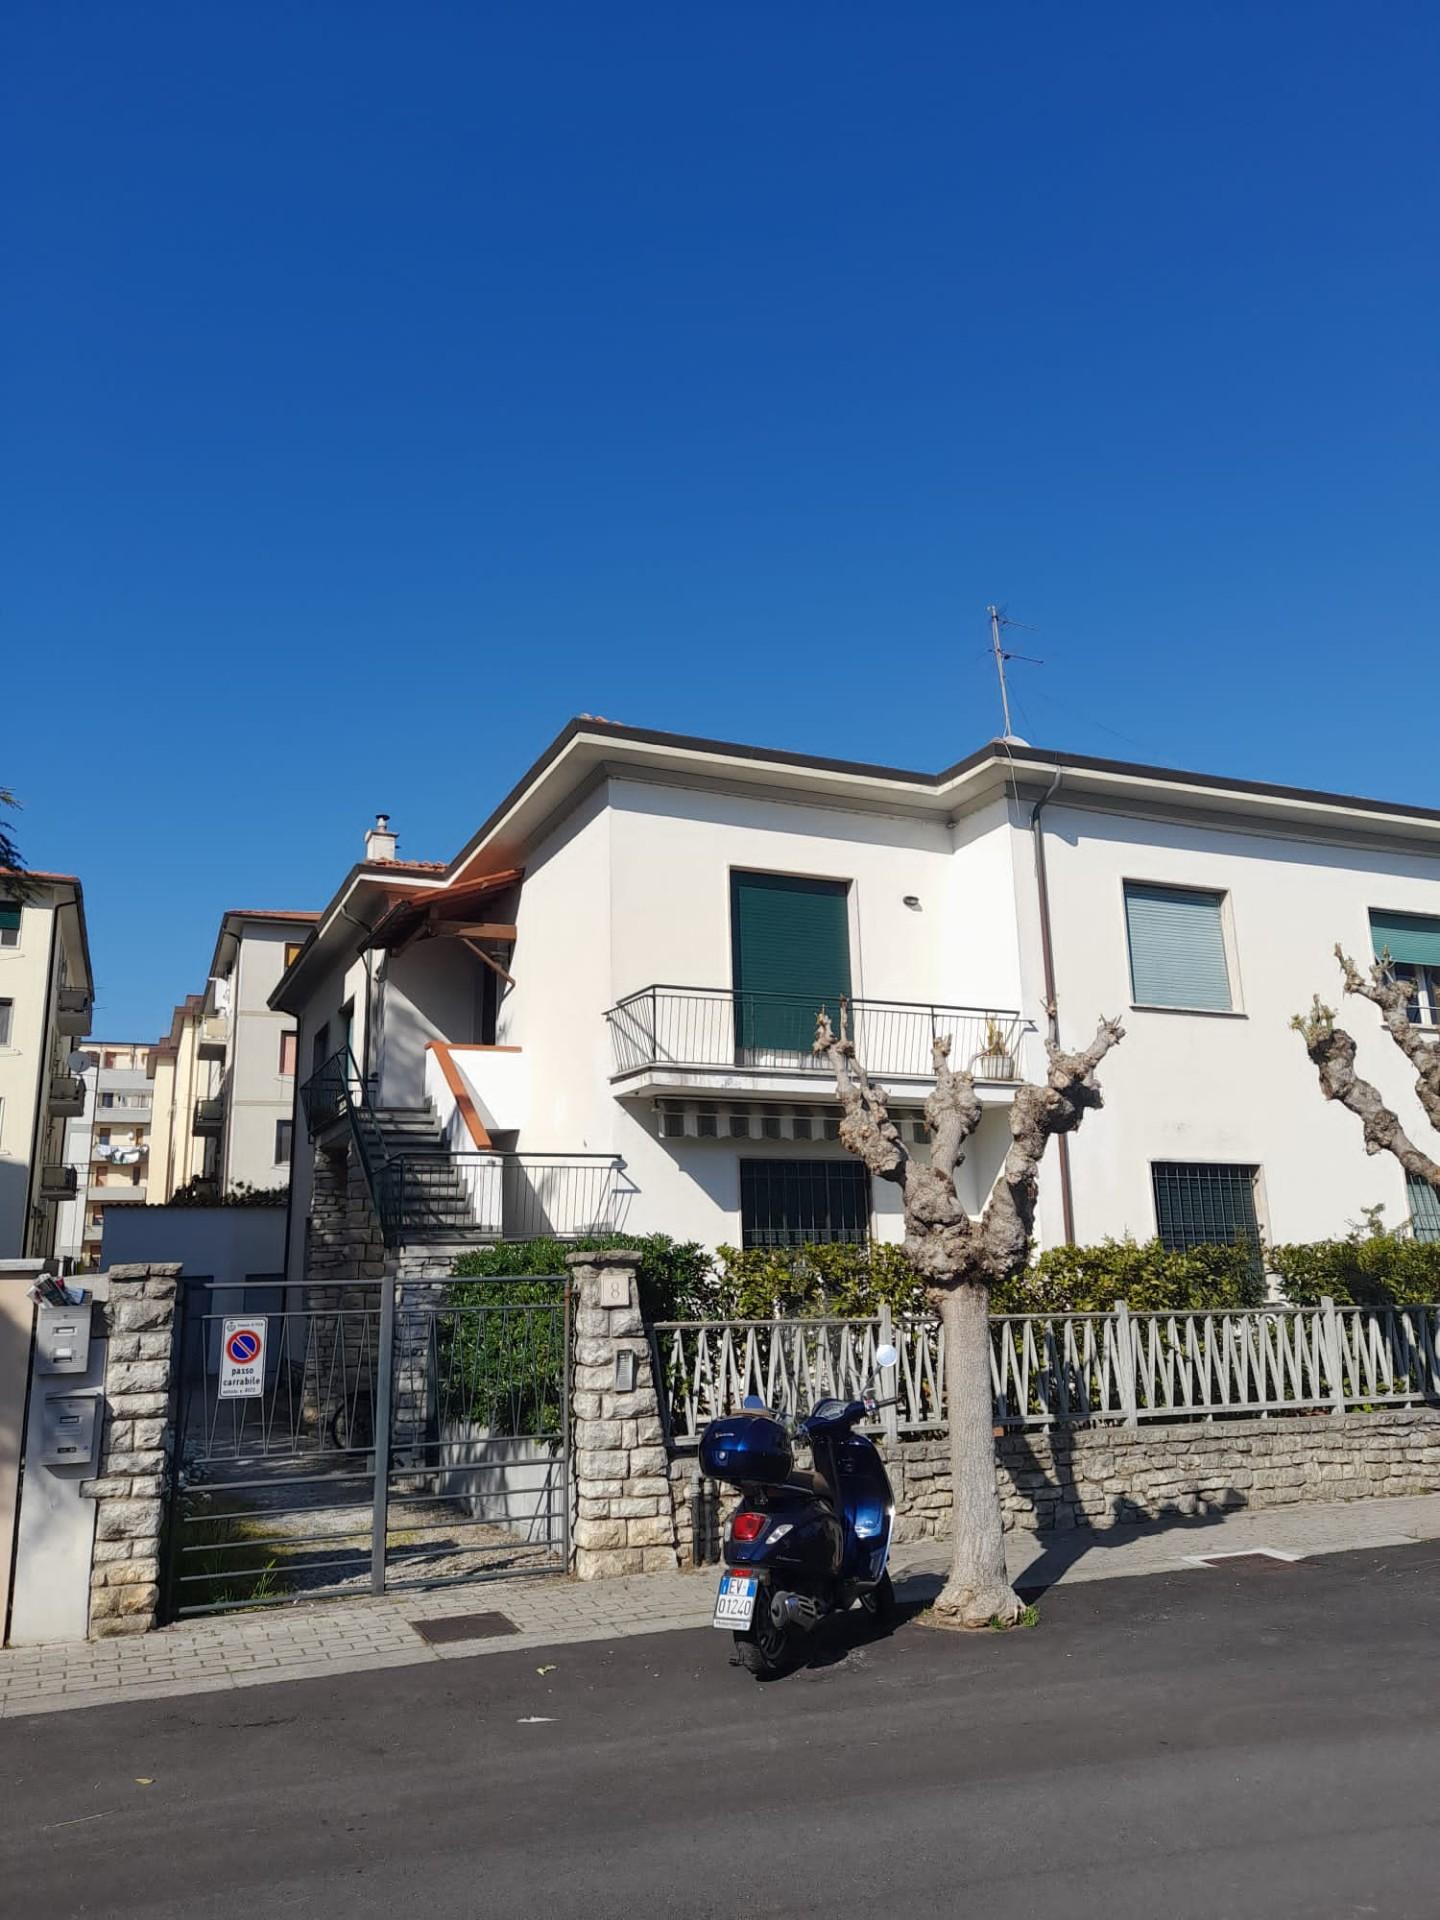 Camere in affitto a Porta A Lucca, Pisa (PI)